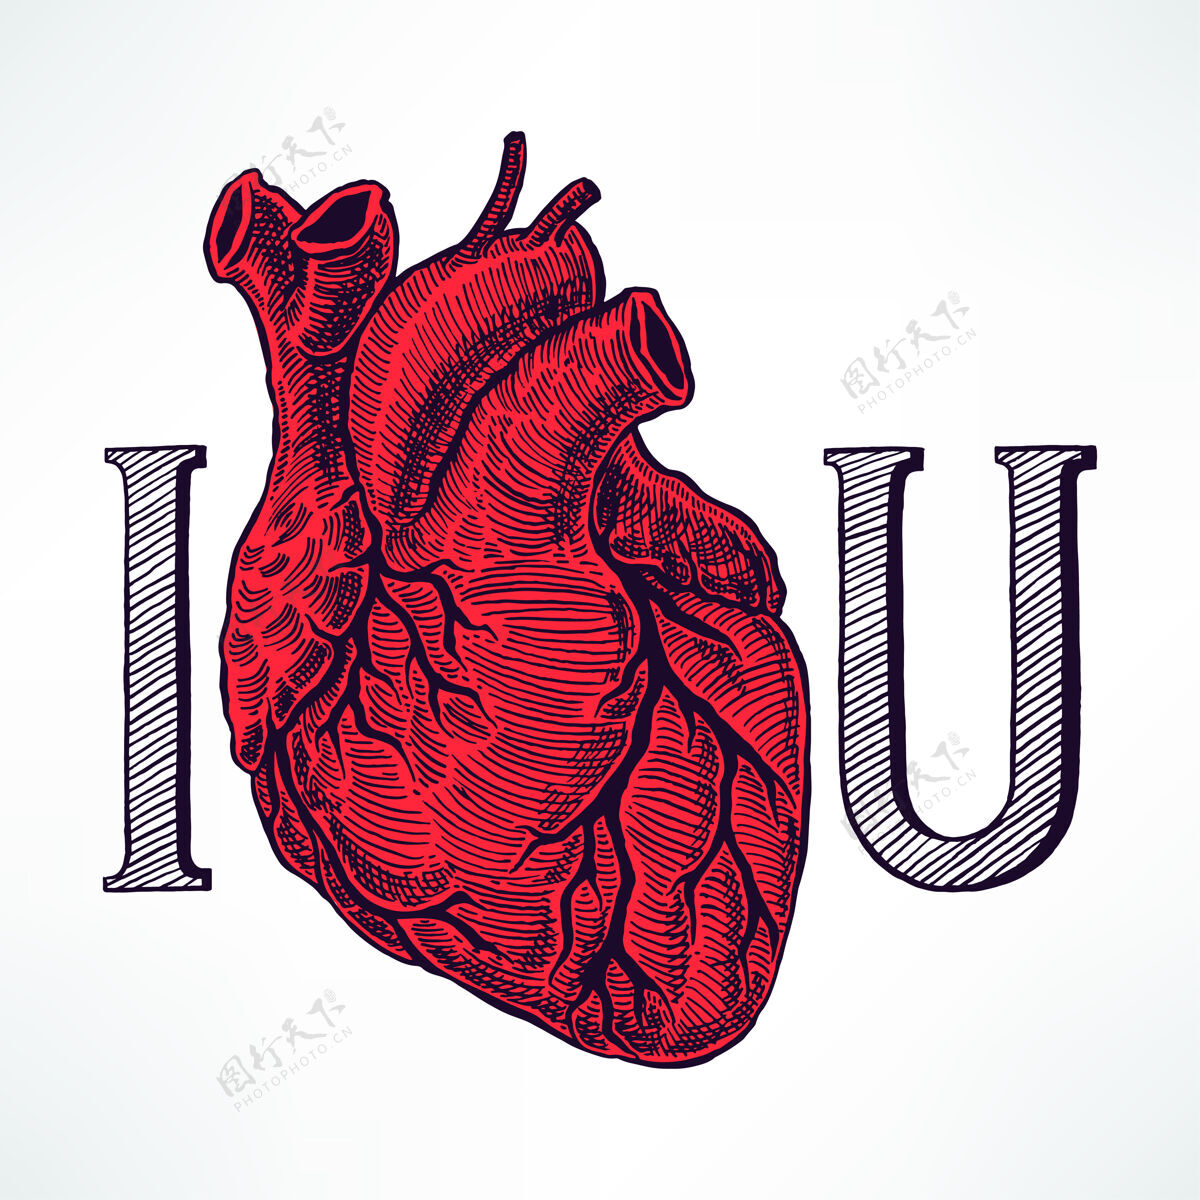 意我爱你用美丽的人心来诠释浪漫瓣膜心脏病学